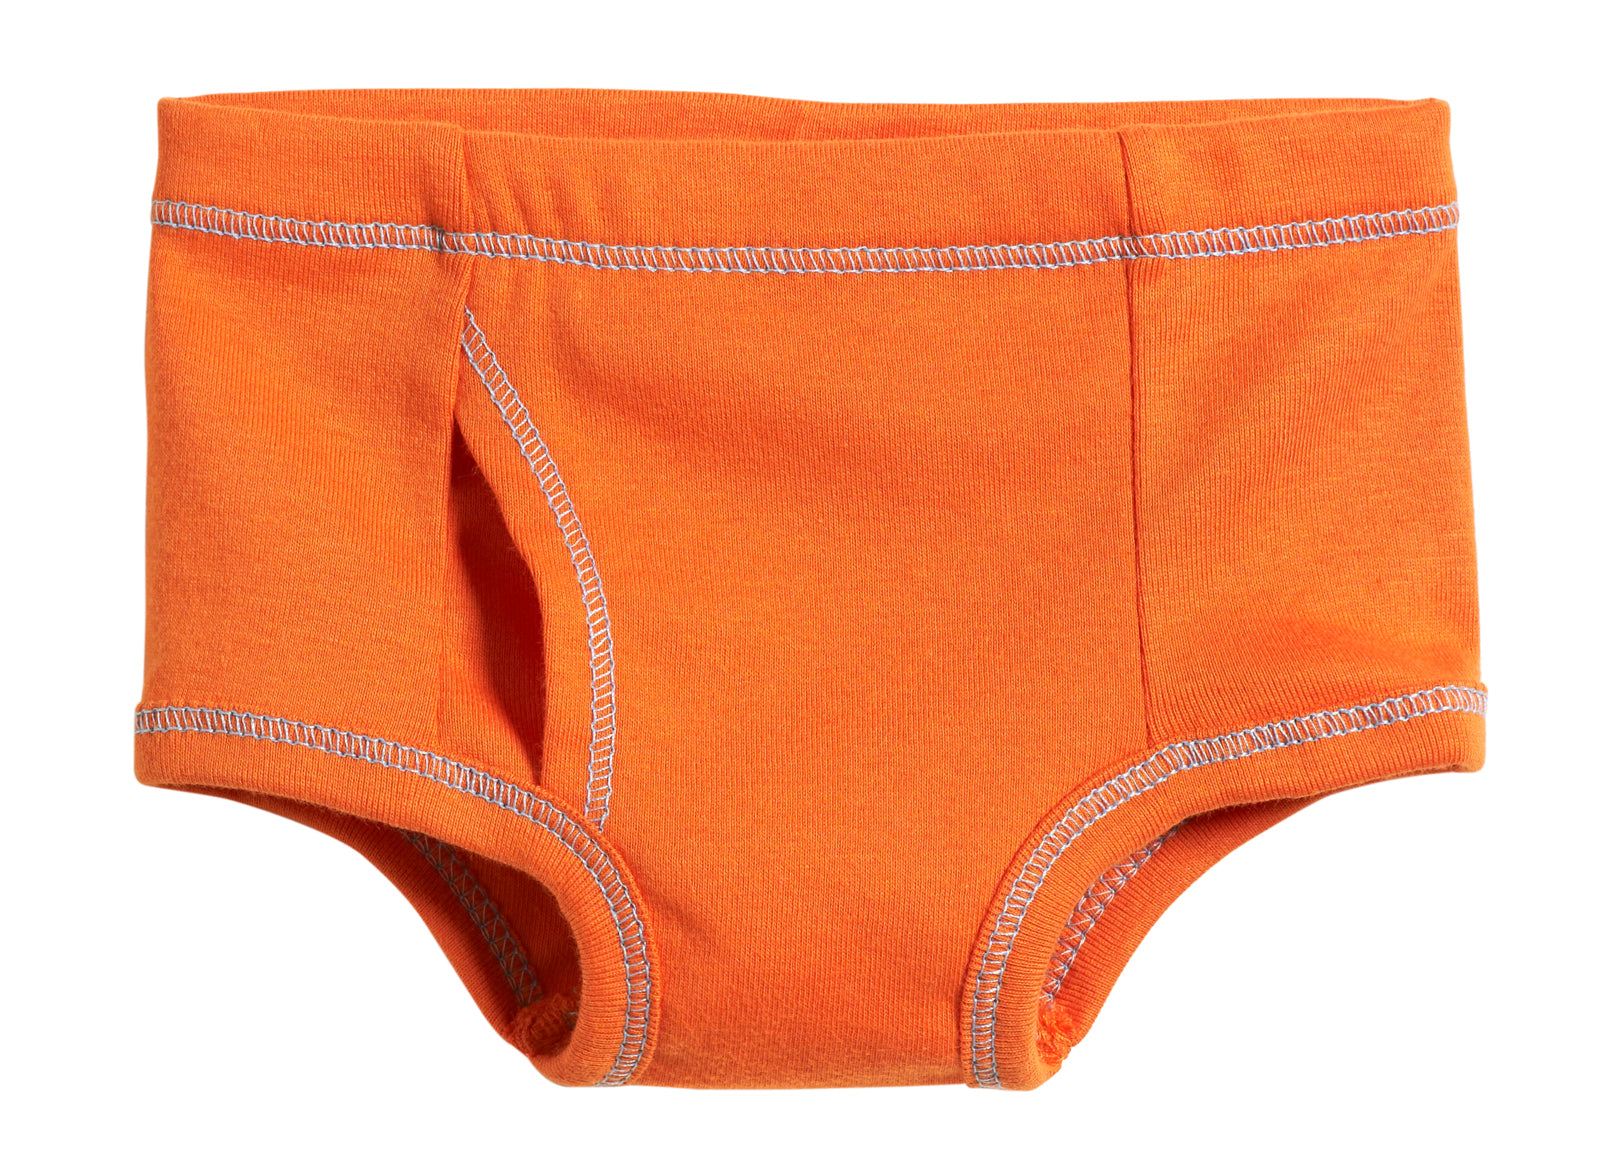 kids briefs underwear